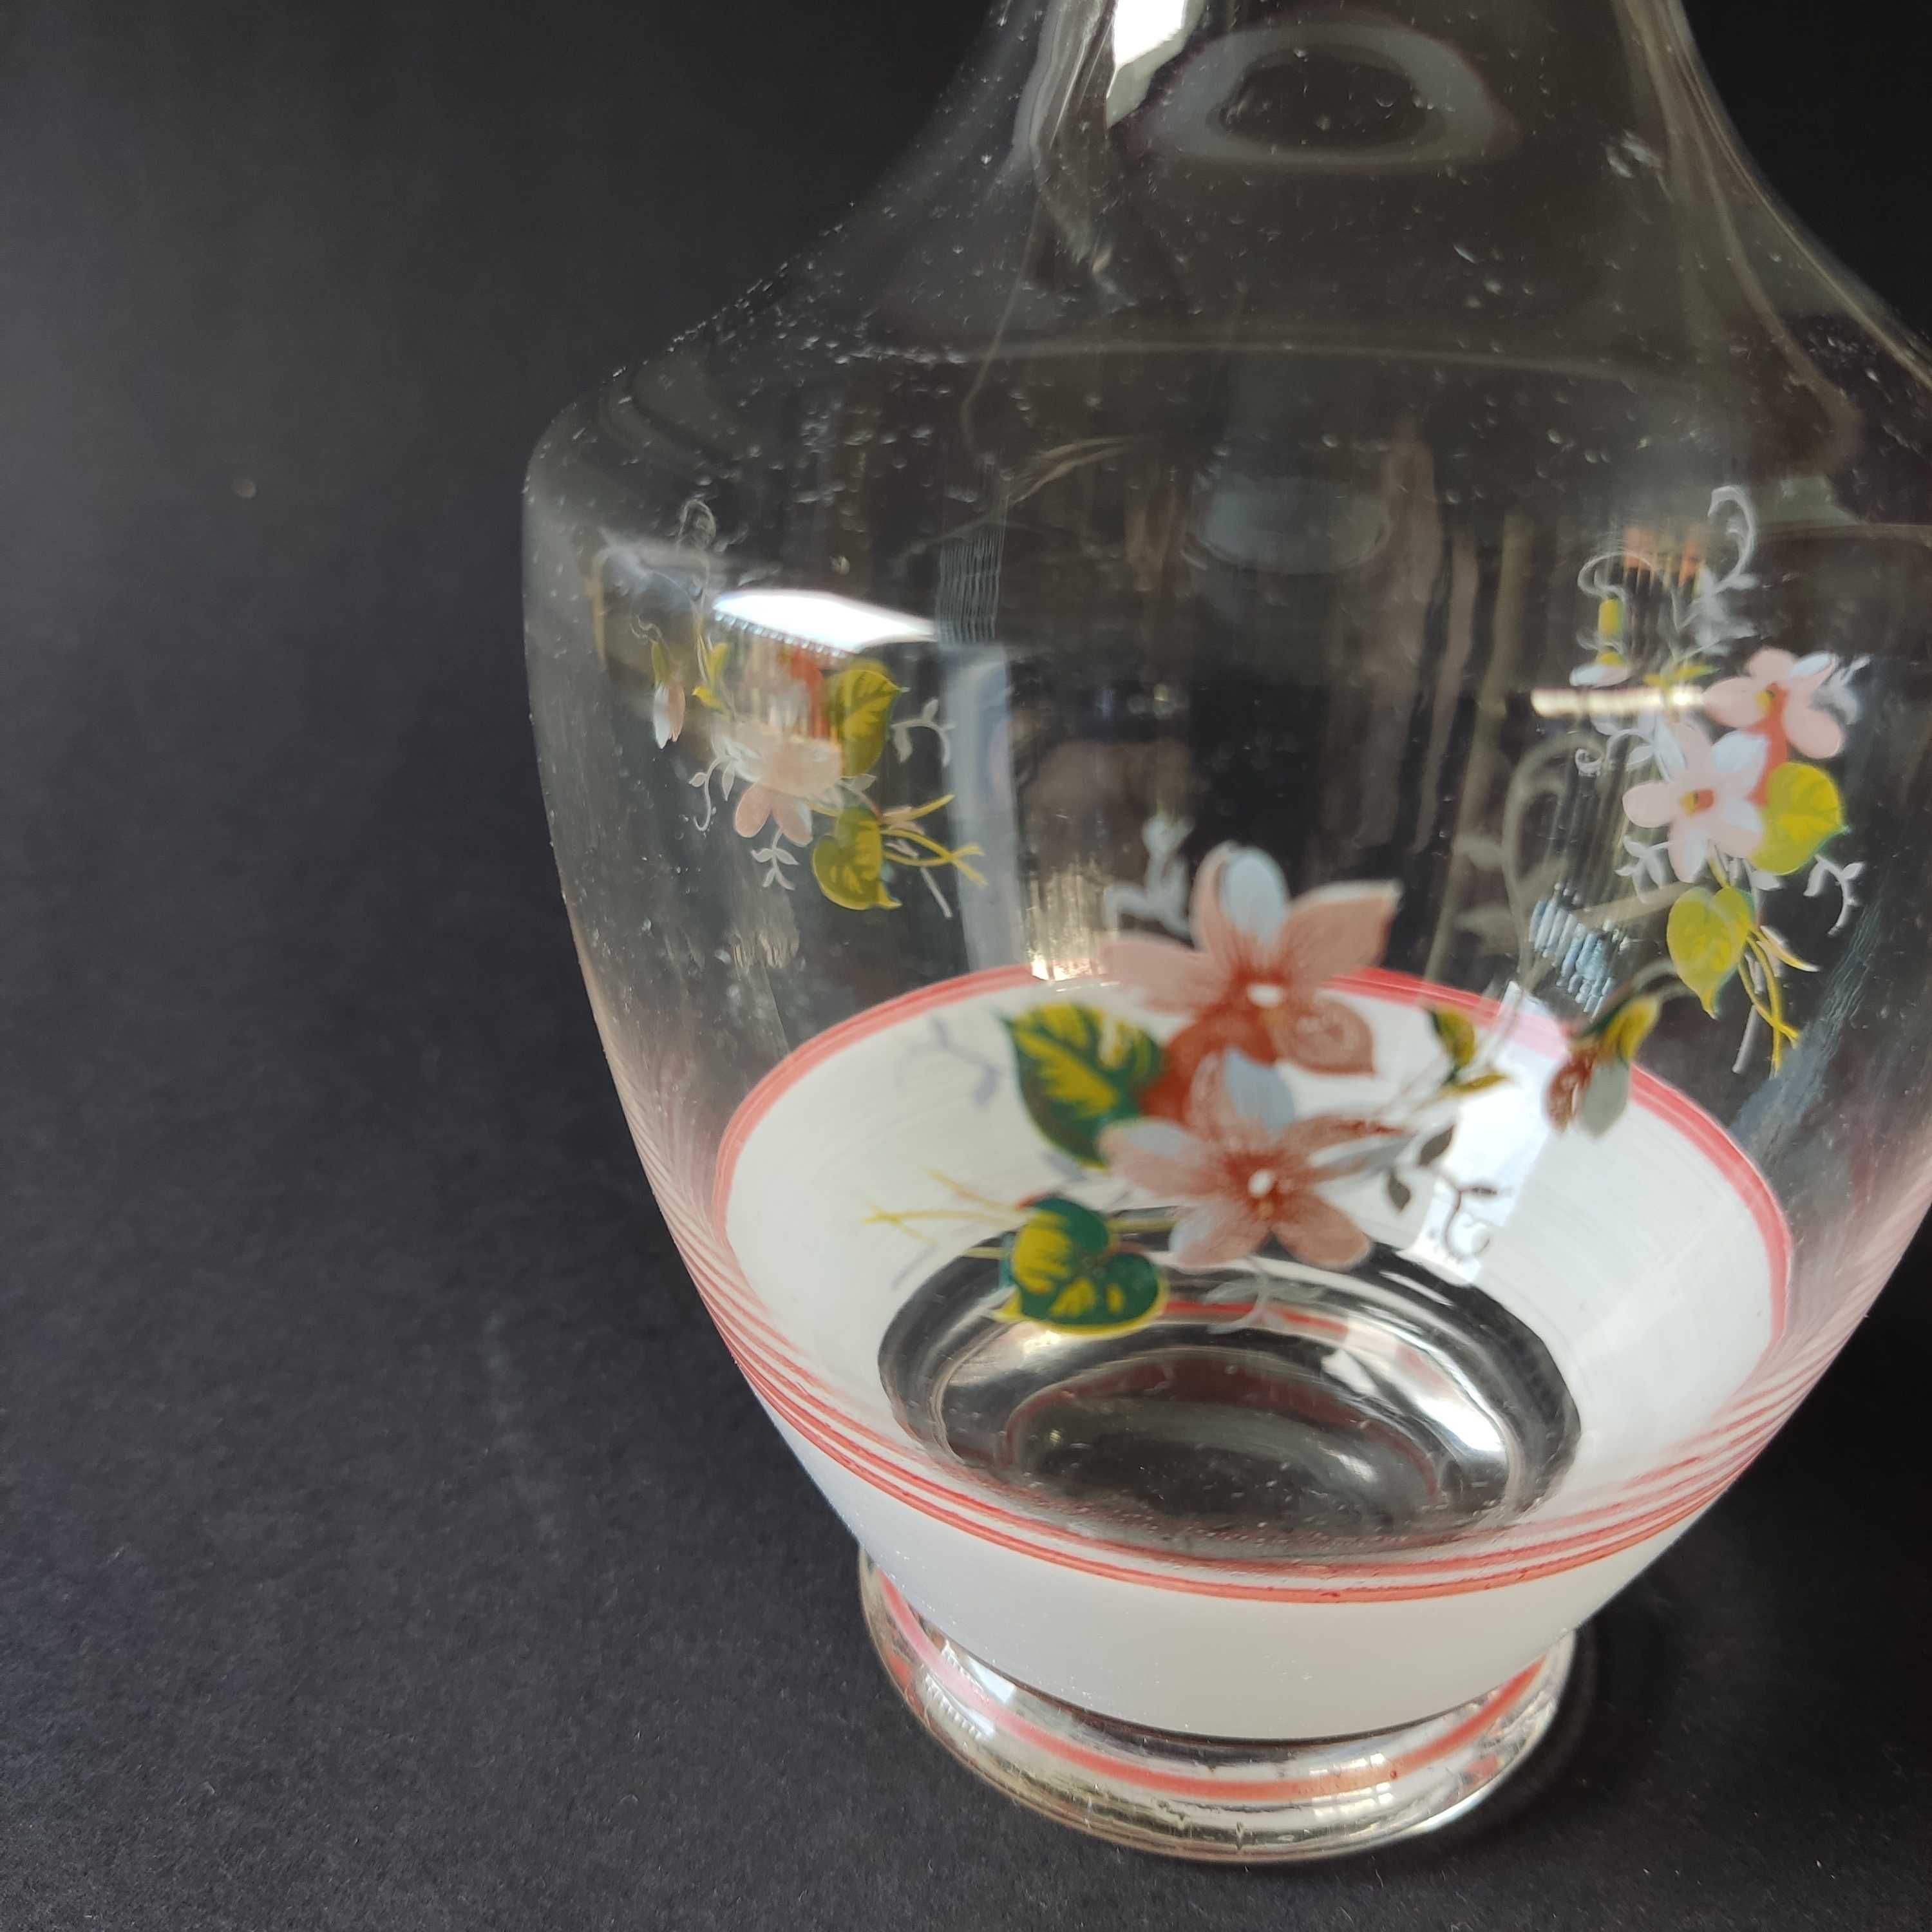 Szklana karafka - ręcznie malowane wzory kwiatowe - obniżka